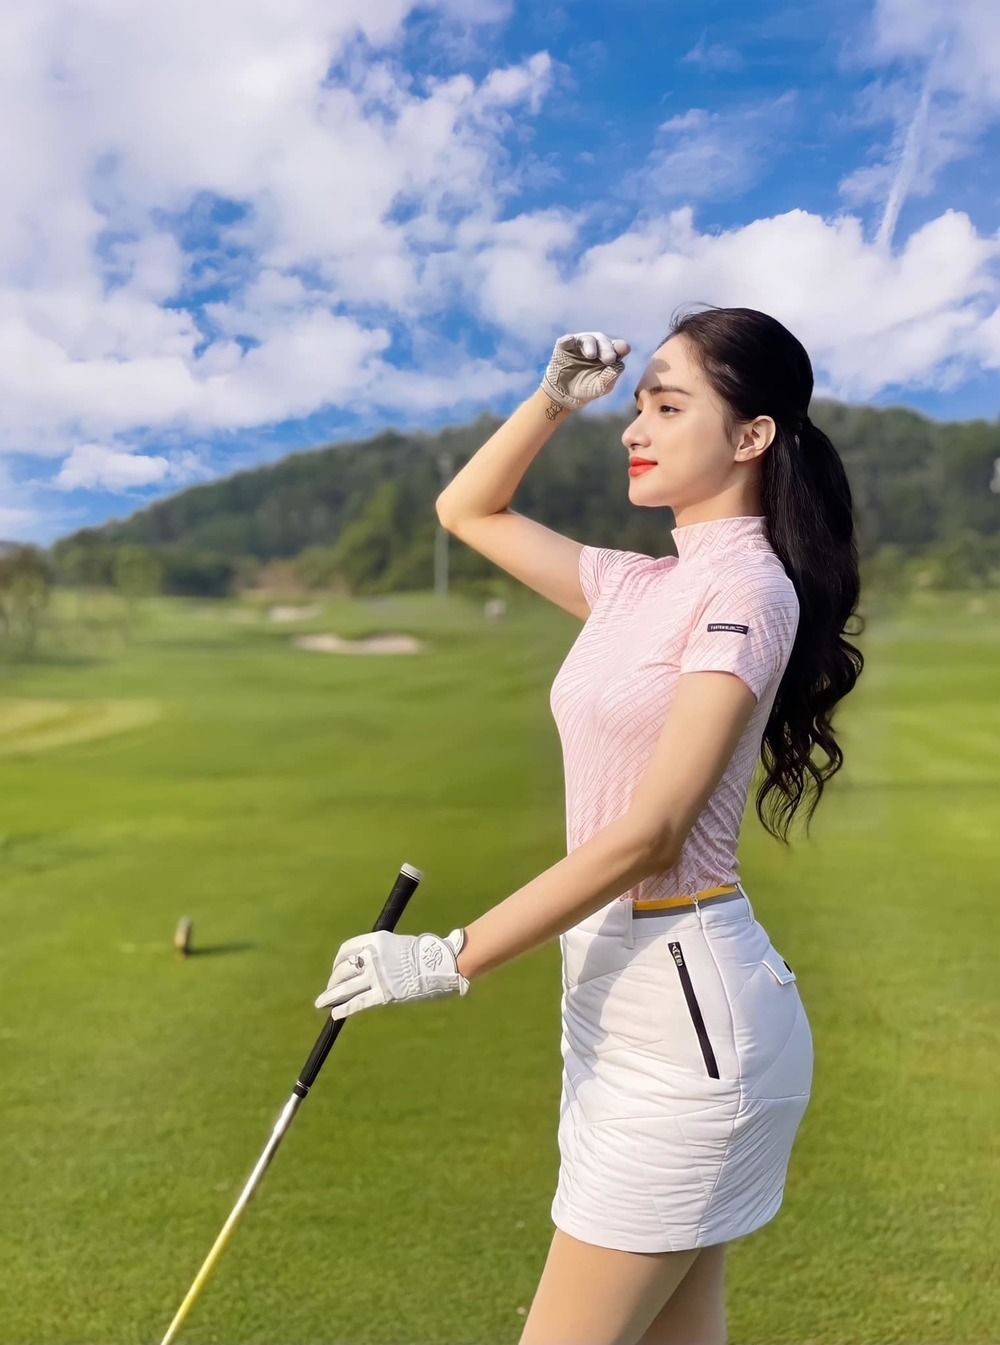  
Hương Giang cũng là một tay golf cừ khôi trong hội chị em chơi golf. (Ảnh: Facebook Hương Giang)